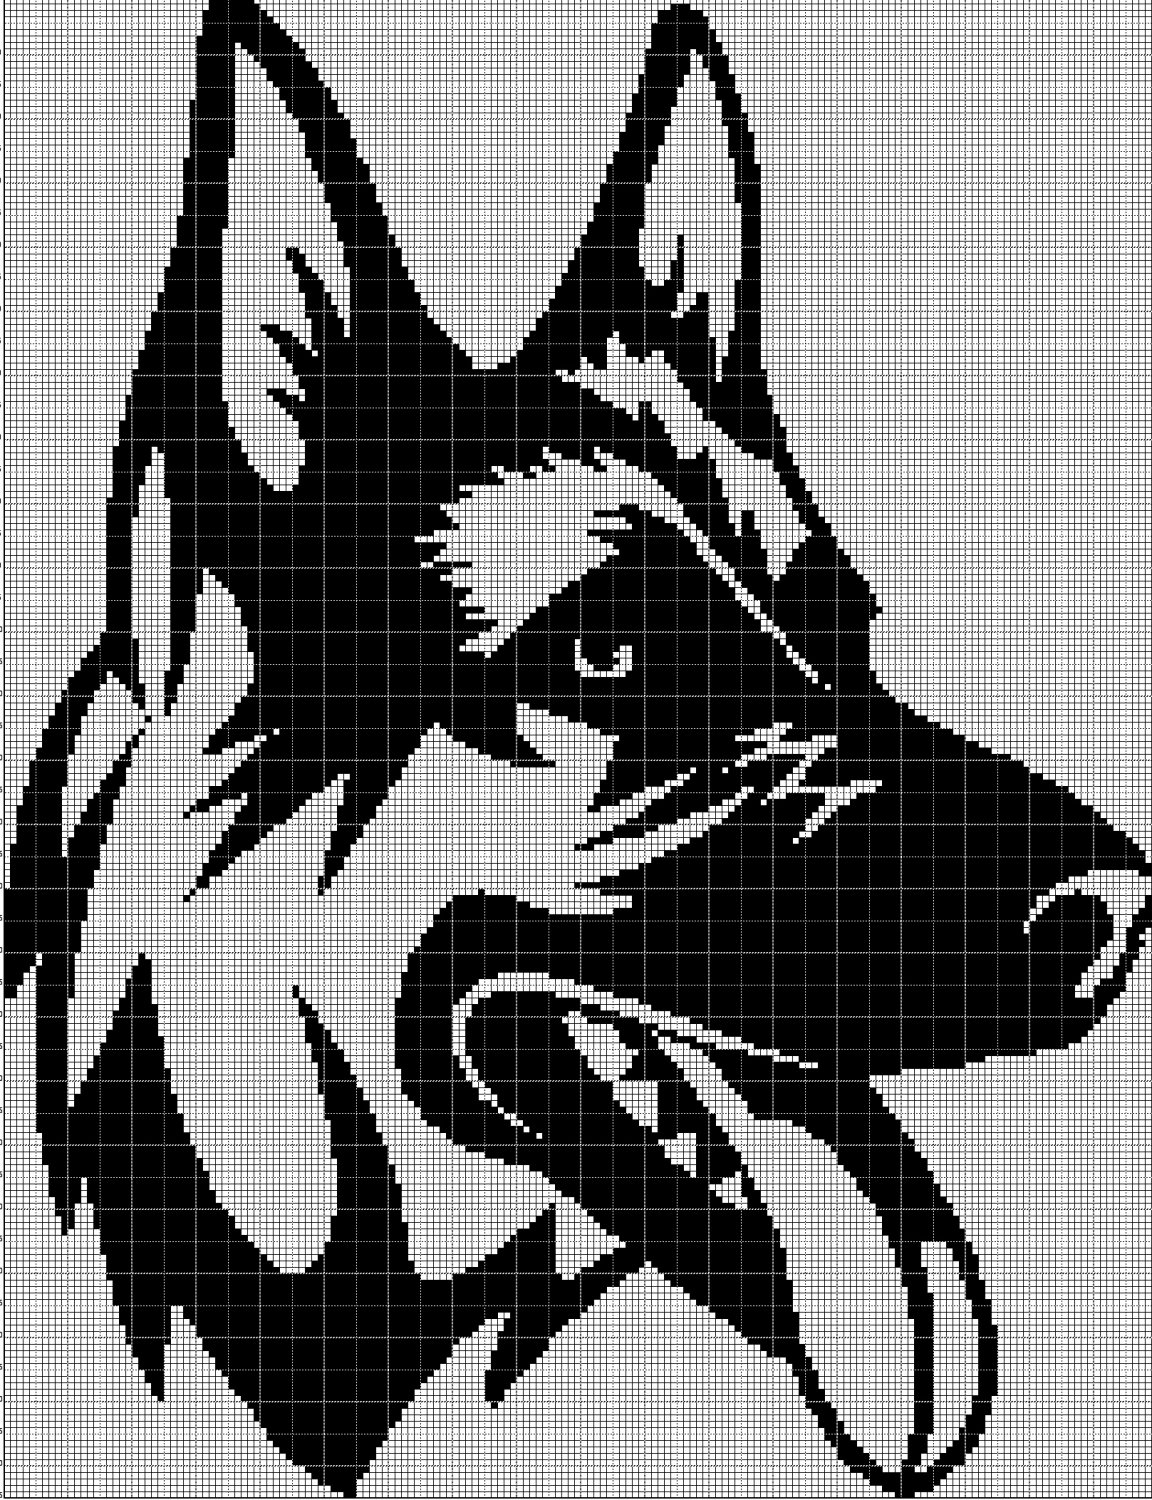 German Shepherd head silhouette cross stitch pattern in pdf